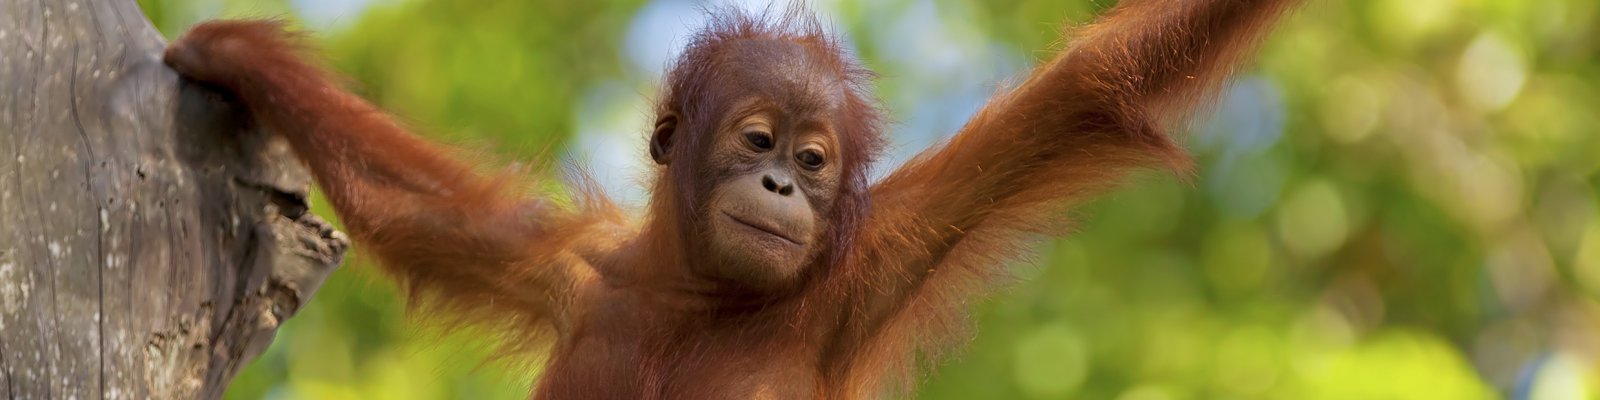 Młody orangutan w deszczowym lesie na Borneo